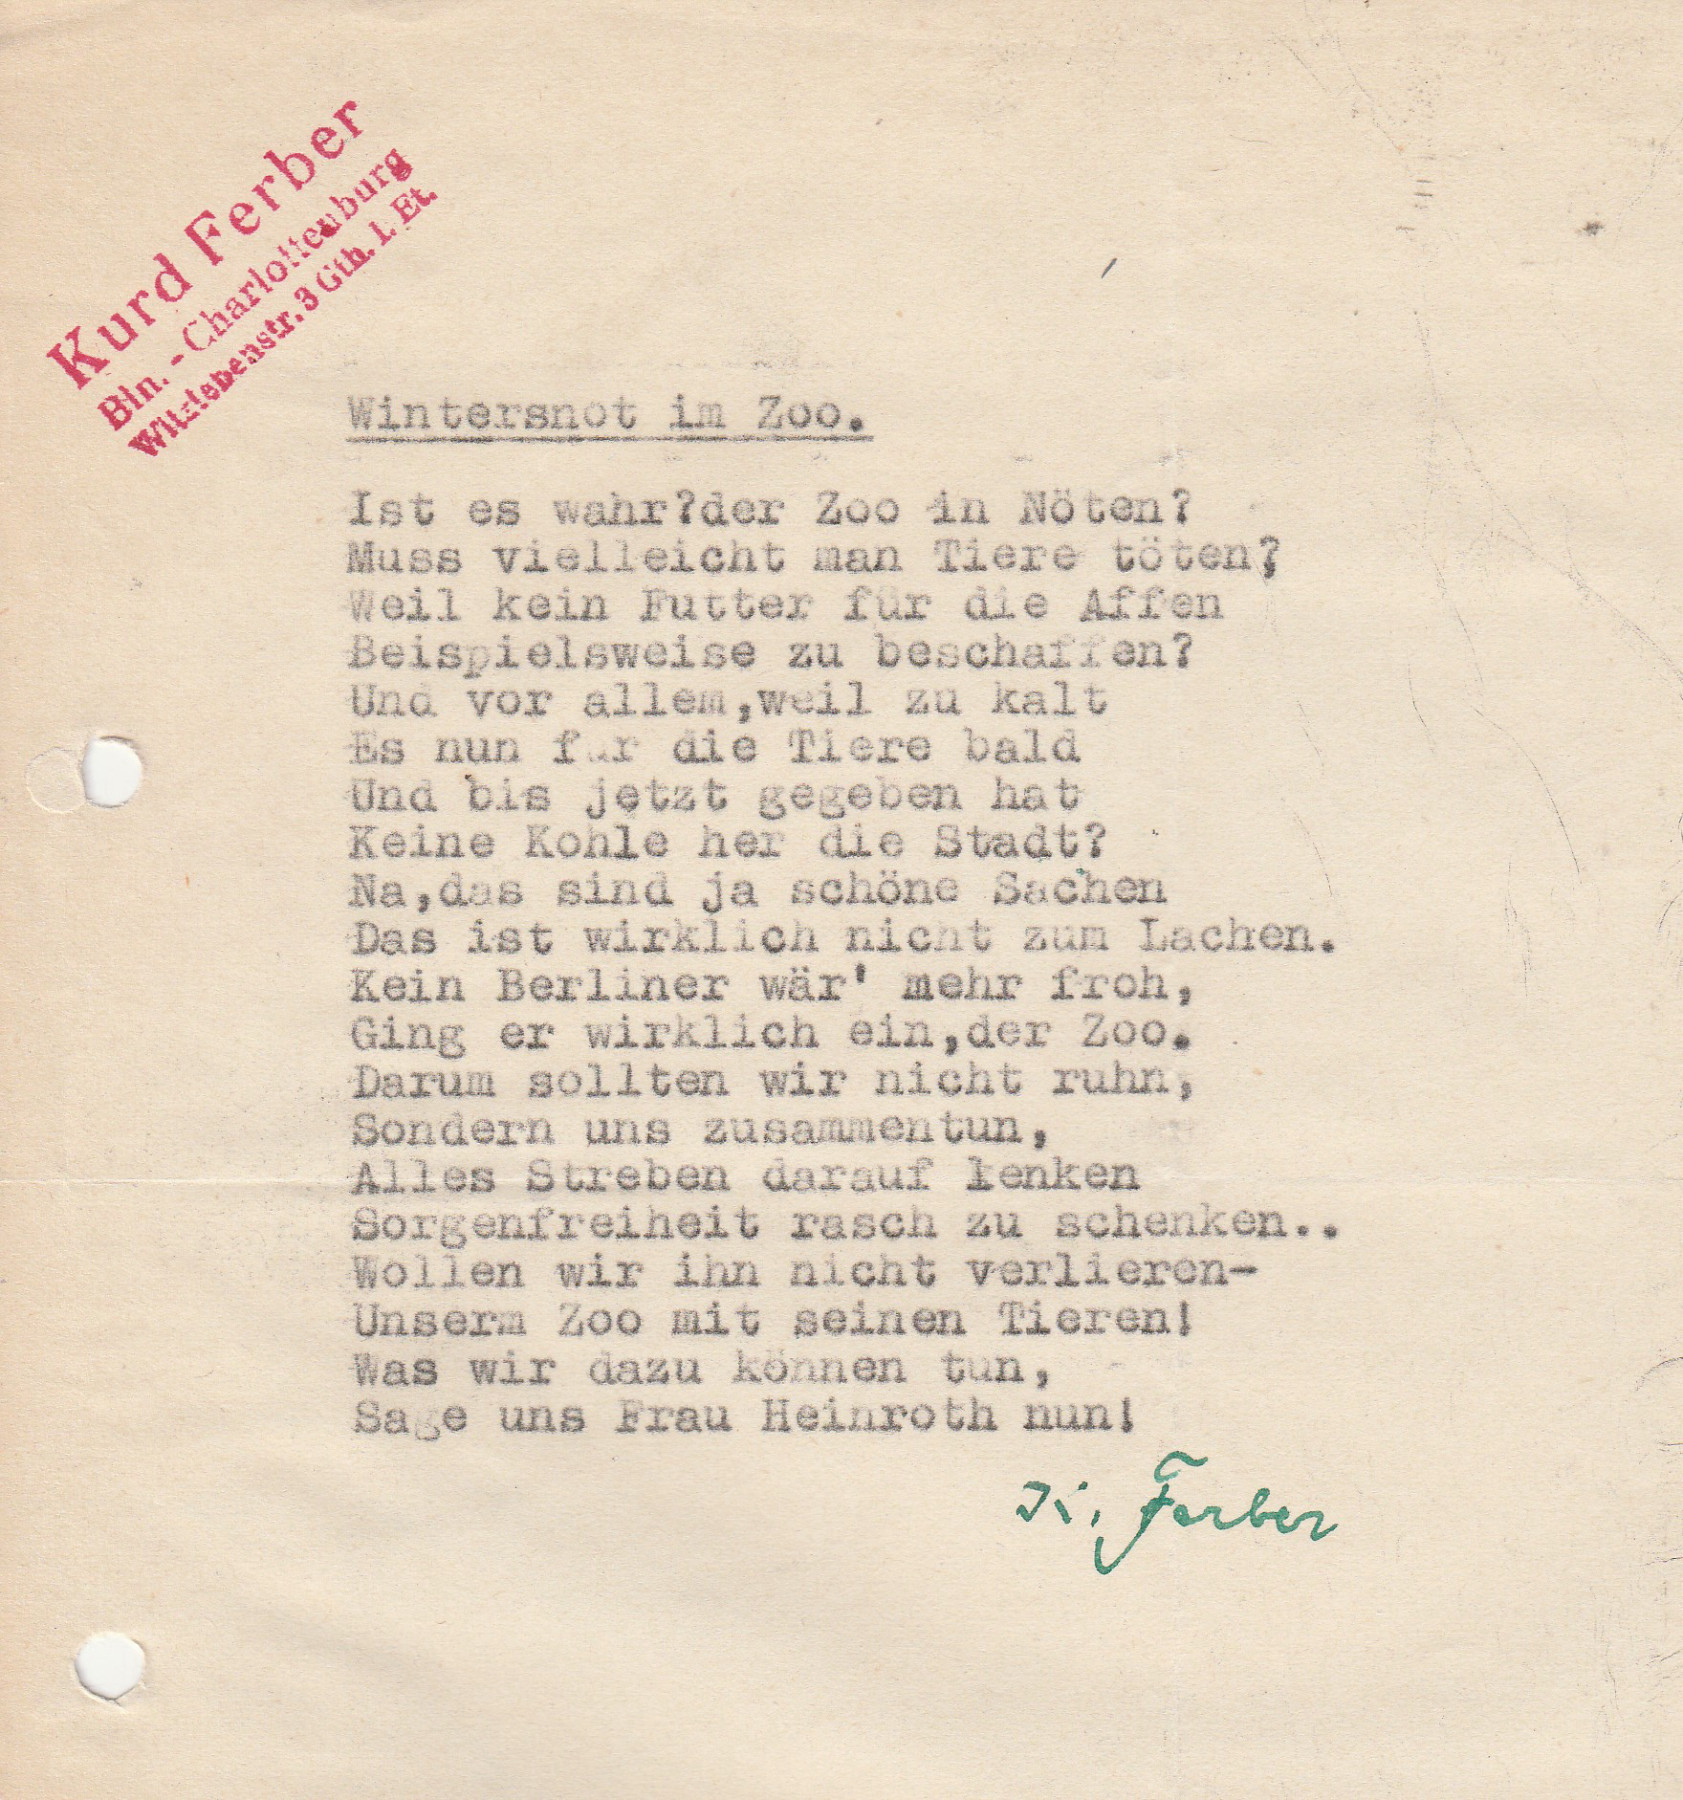 Schreibmaschinengeschriebenes Gedicht auf gelochtem Blatt mit rotem Stempel "Kurd Ferber" und grüner Unterschrift "K. Ferber". Für Transkript, siehe unten.